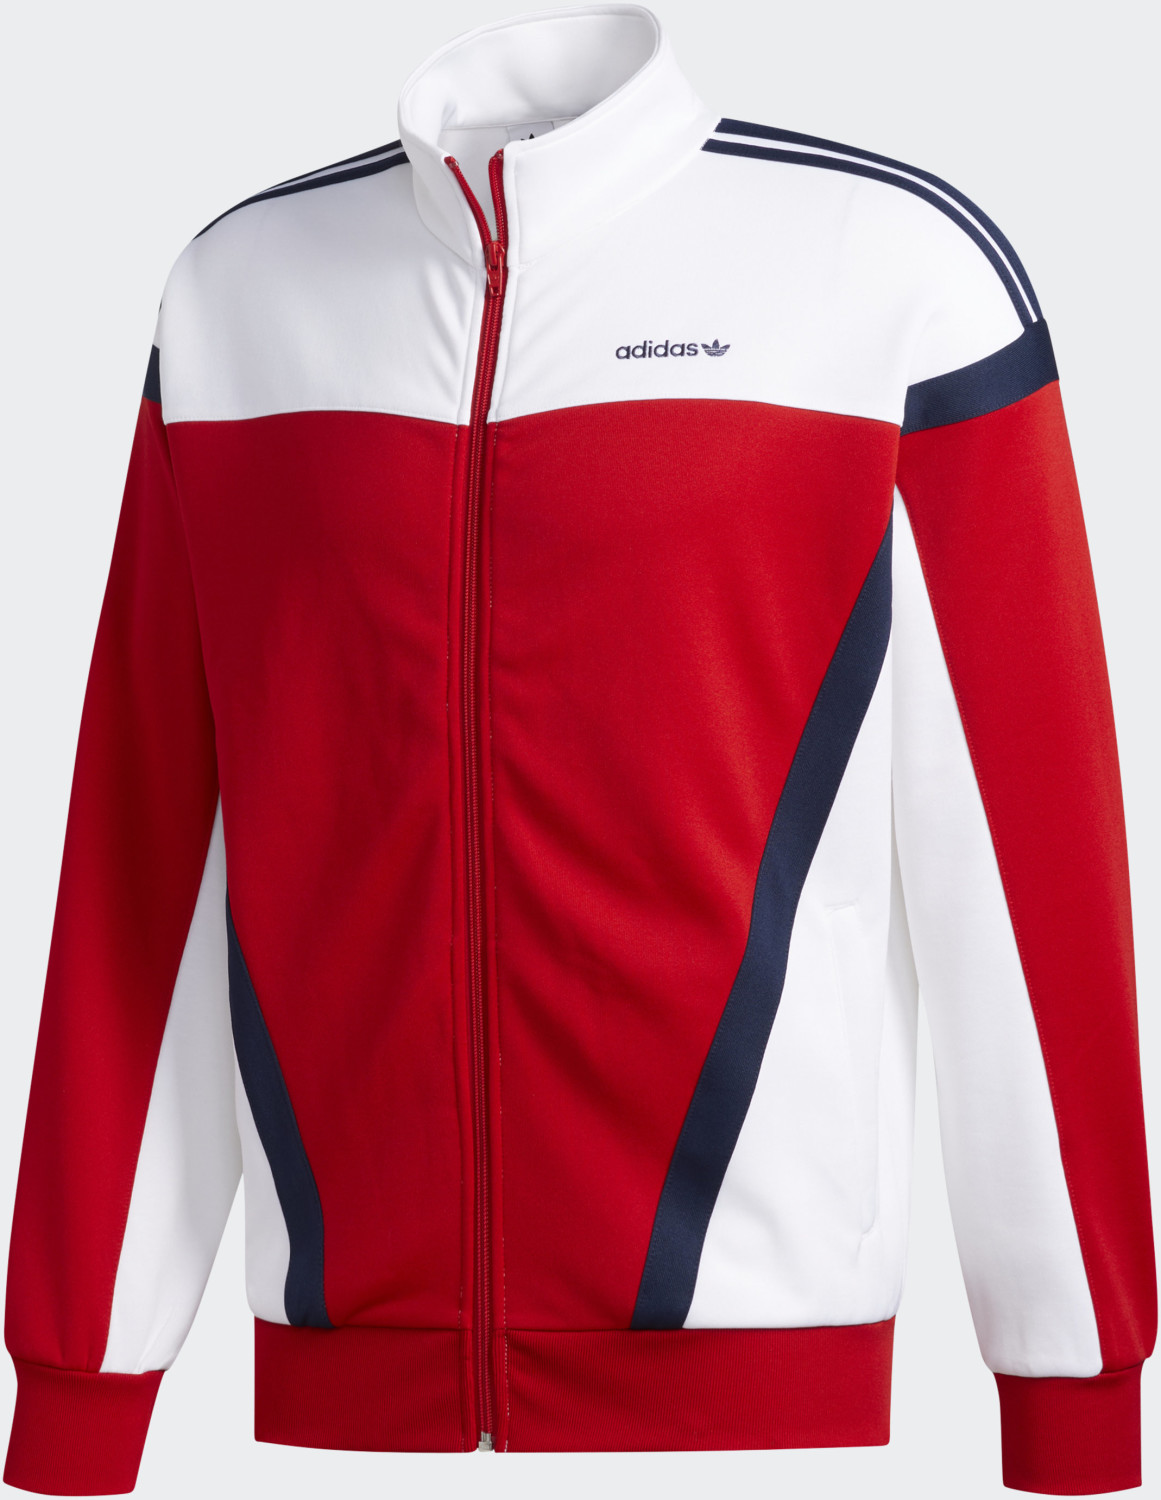 Adidas Classics Originals Jacke scarlet/white (GD2063) ab 35,90 € |  Preisvergleich bei